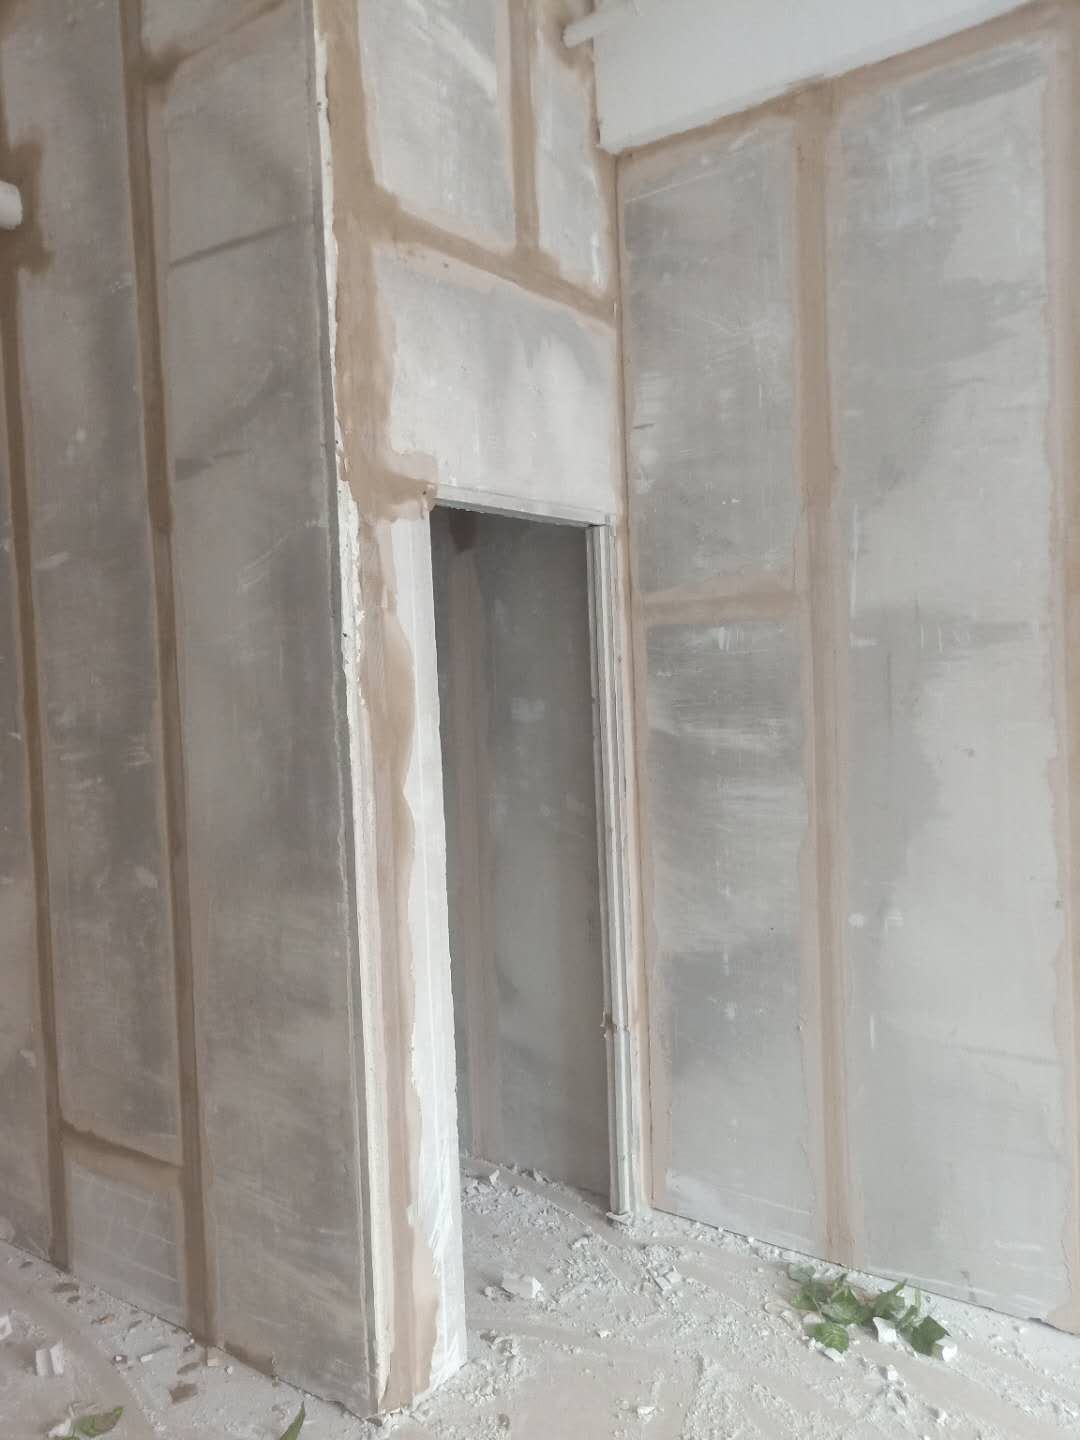 乌鲁木齐轻质隔墙板厂家的轻质墙板的面板是专业的防水板